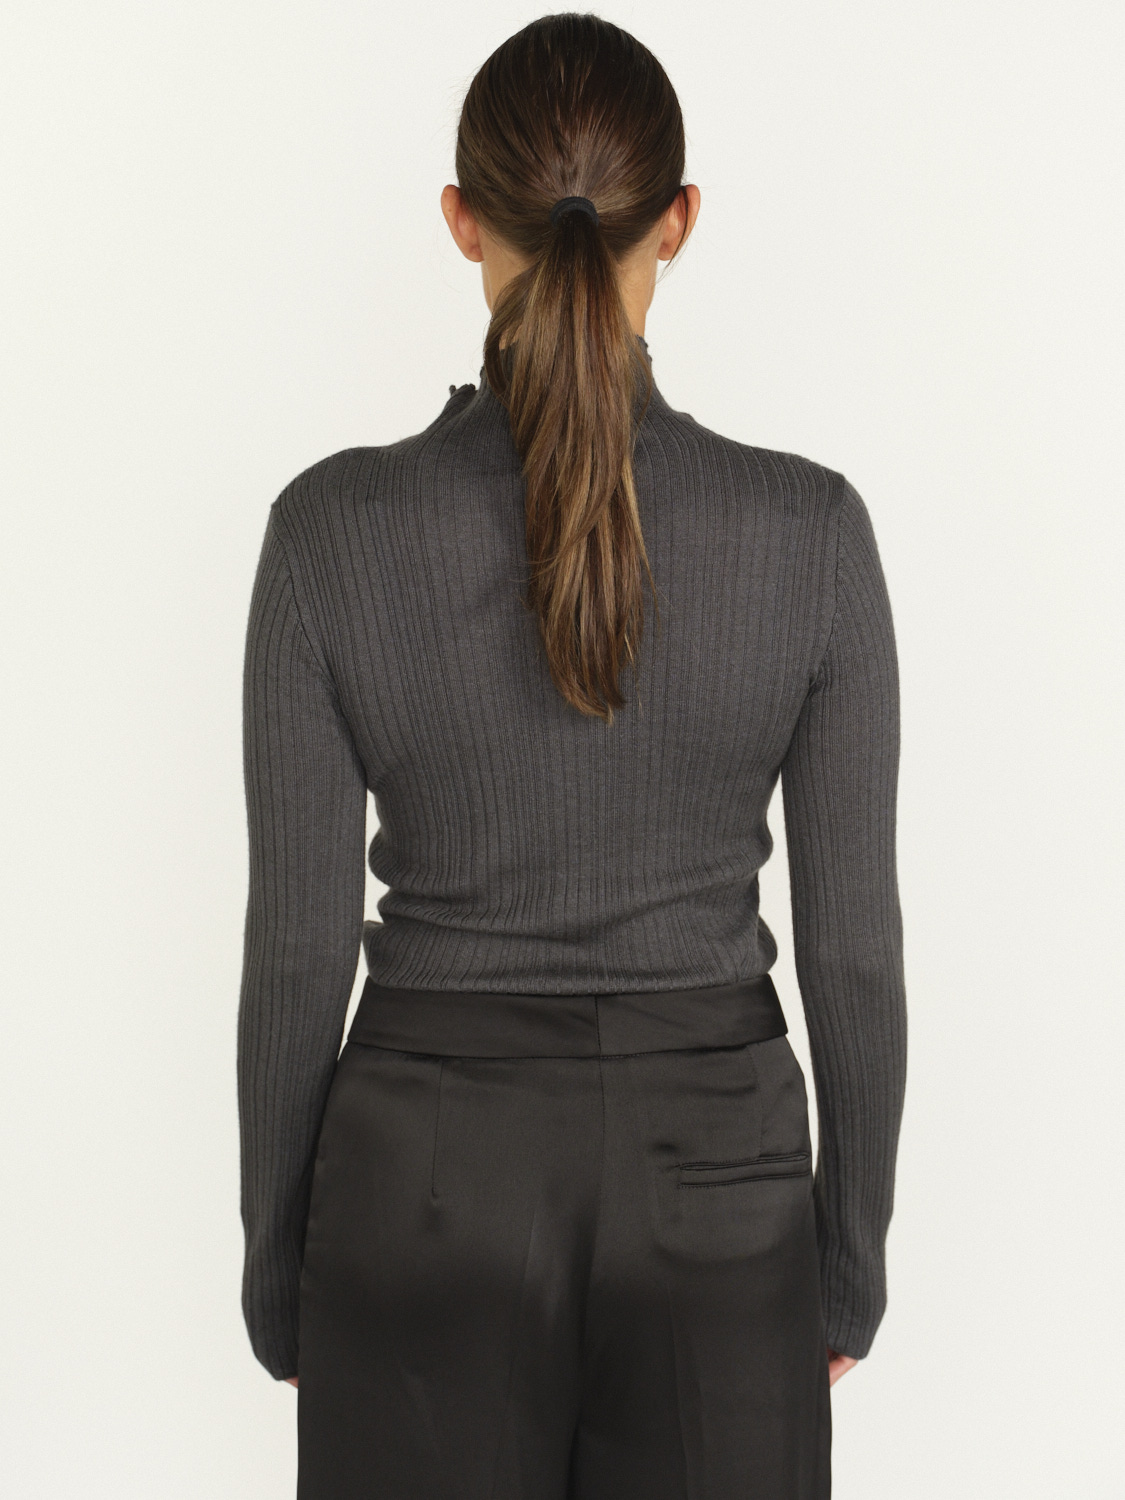 Iris von Arnim Cashmere Silk Sweater - cashmere and silk ribbed sweater   grey L